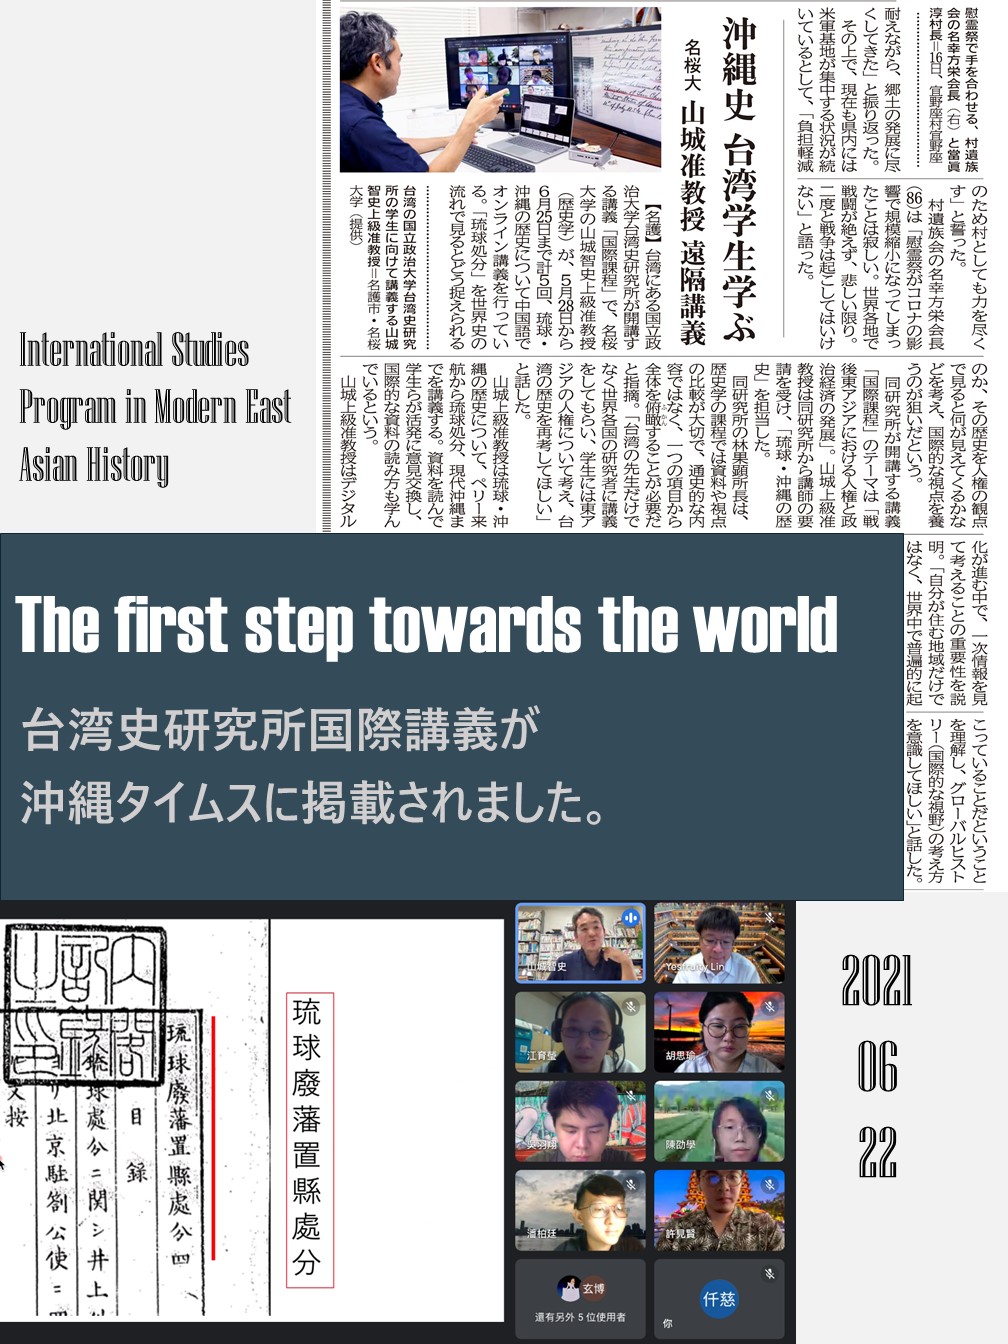 【賀】邁向世界　台史所國際課程獲沖繩時報採訪報導